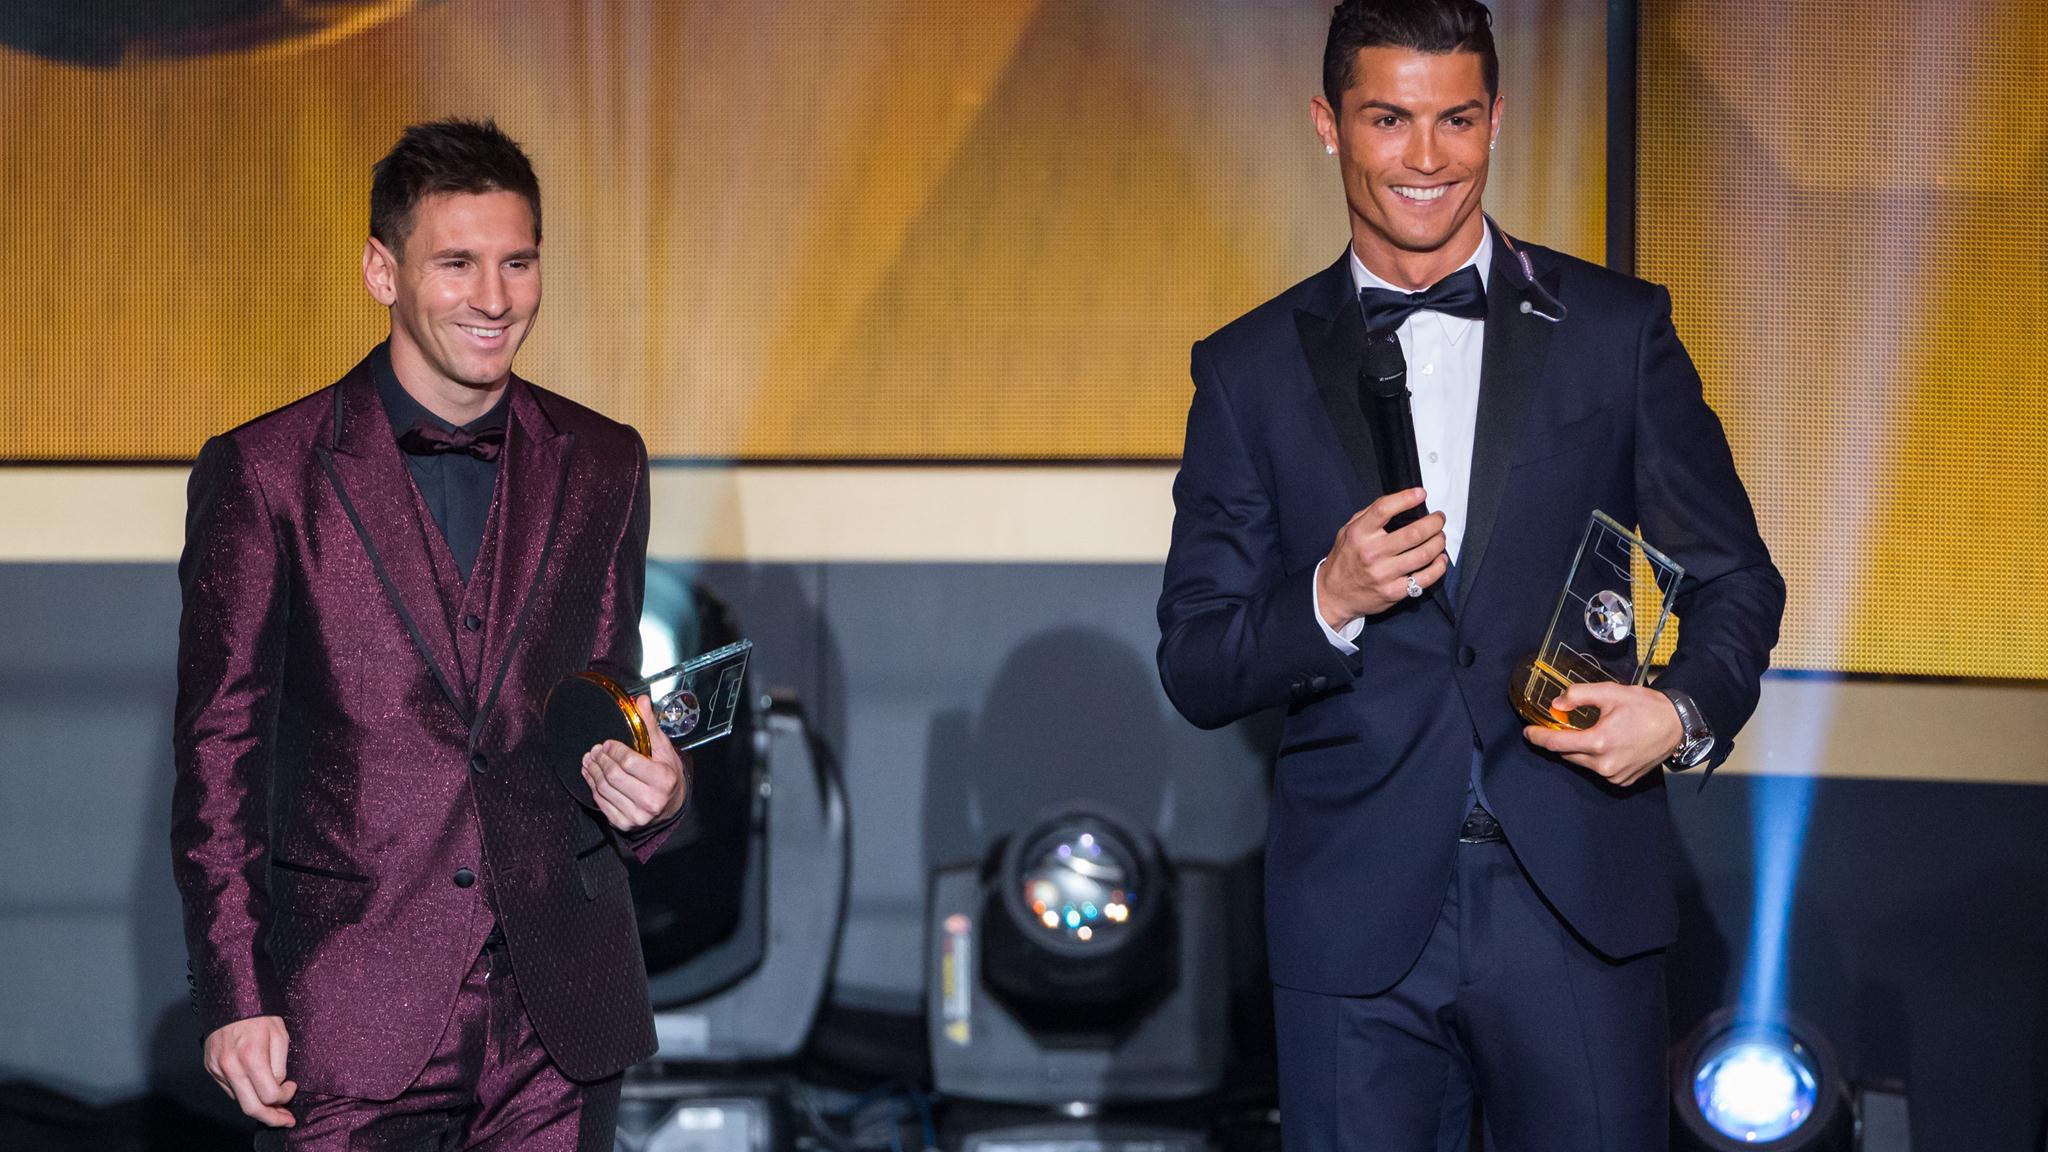 HD Lionel Messi and Cristiano Ronaldo smile during the FIFA Ballon